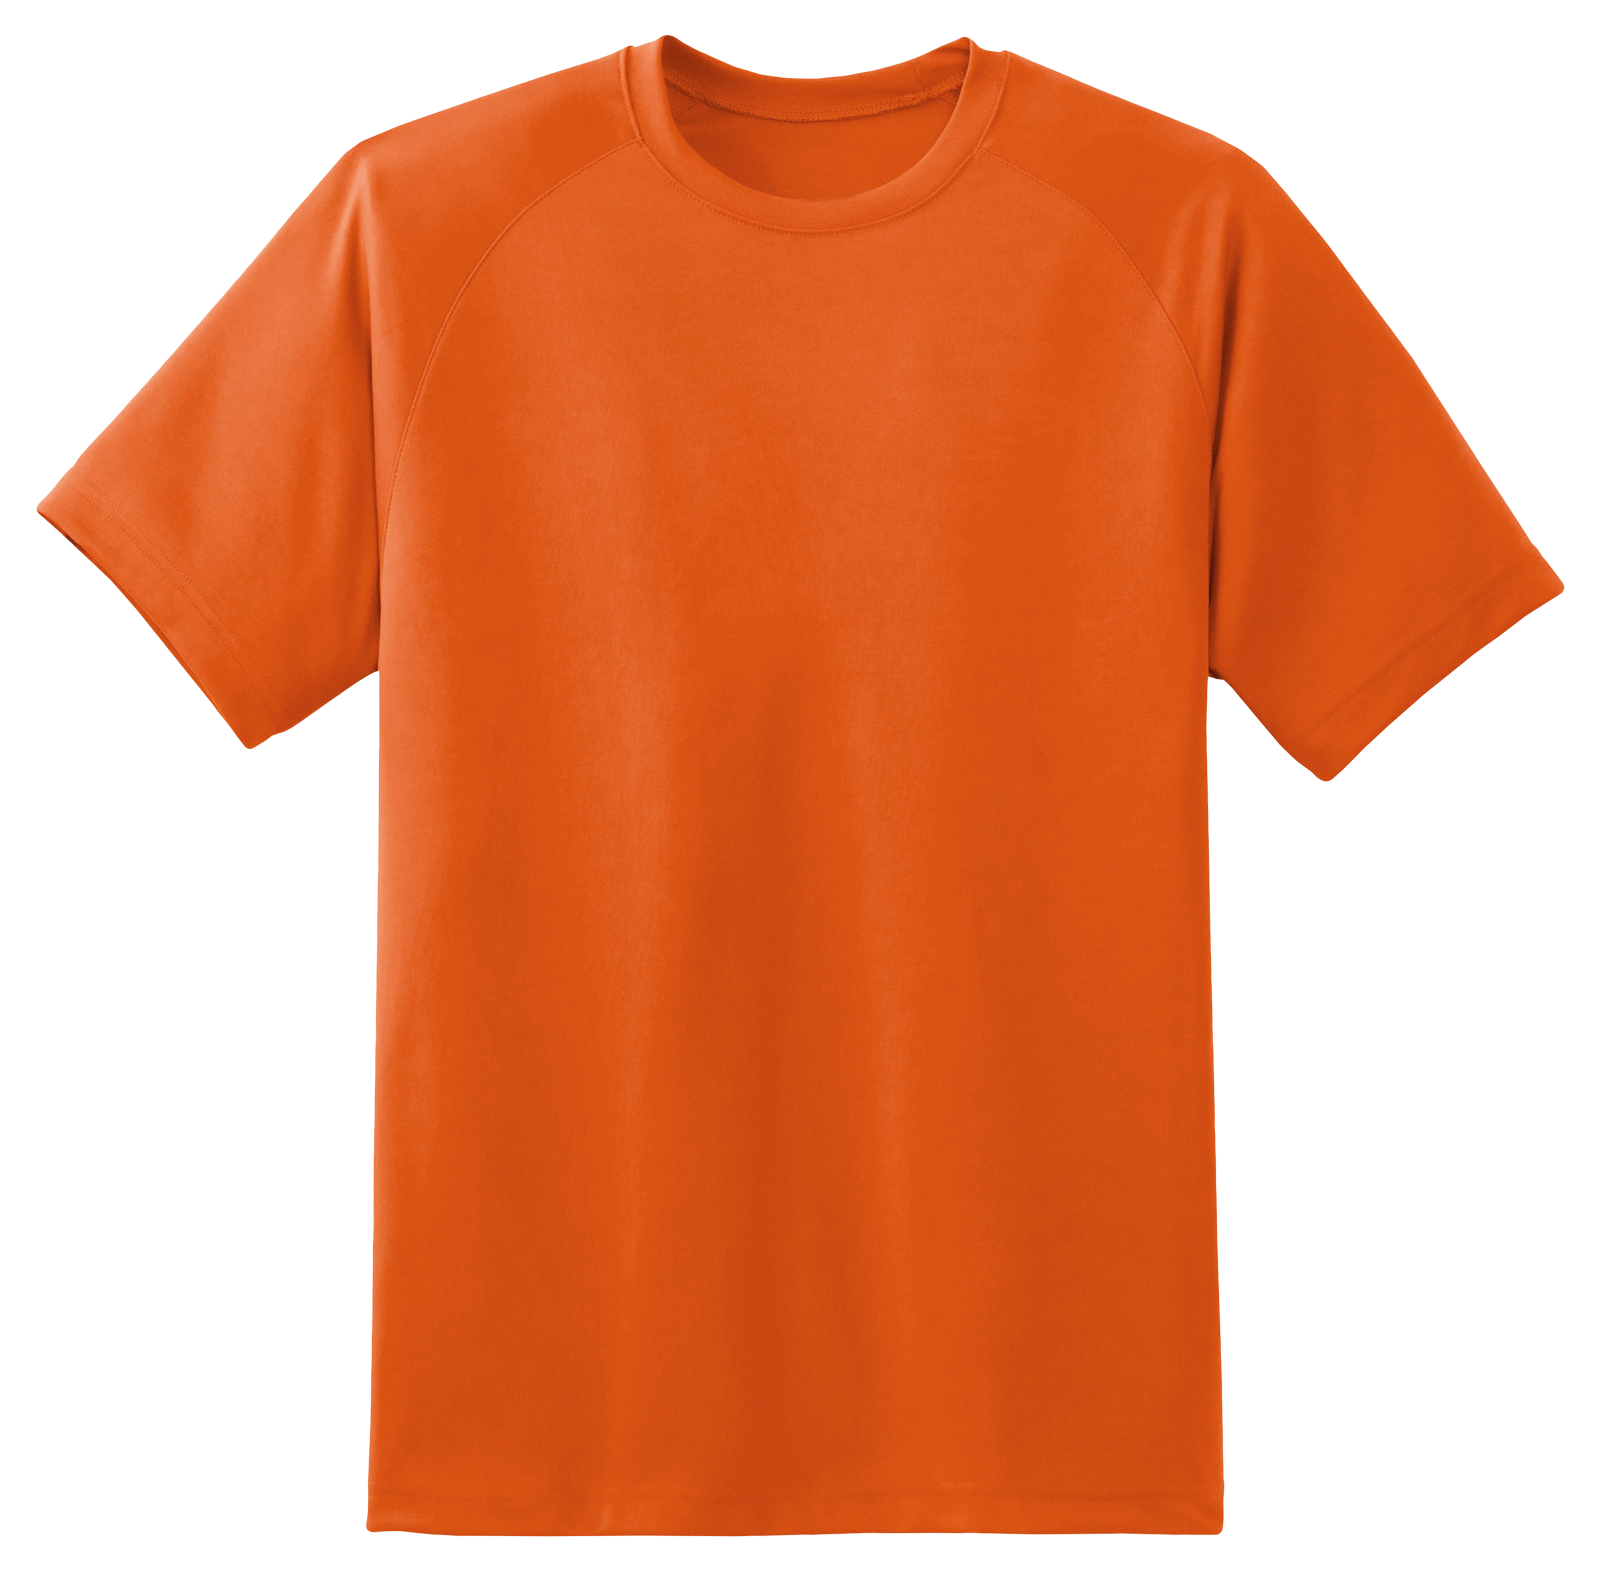 Crewneck Or Classic T-Shirt Transparent Image